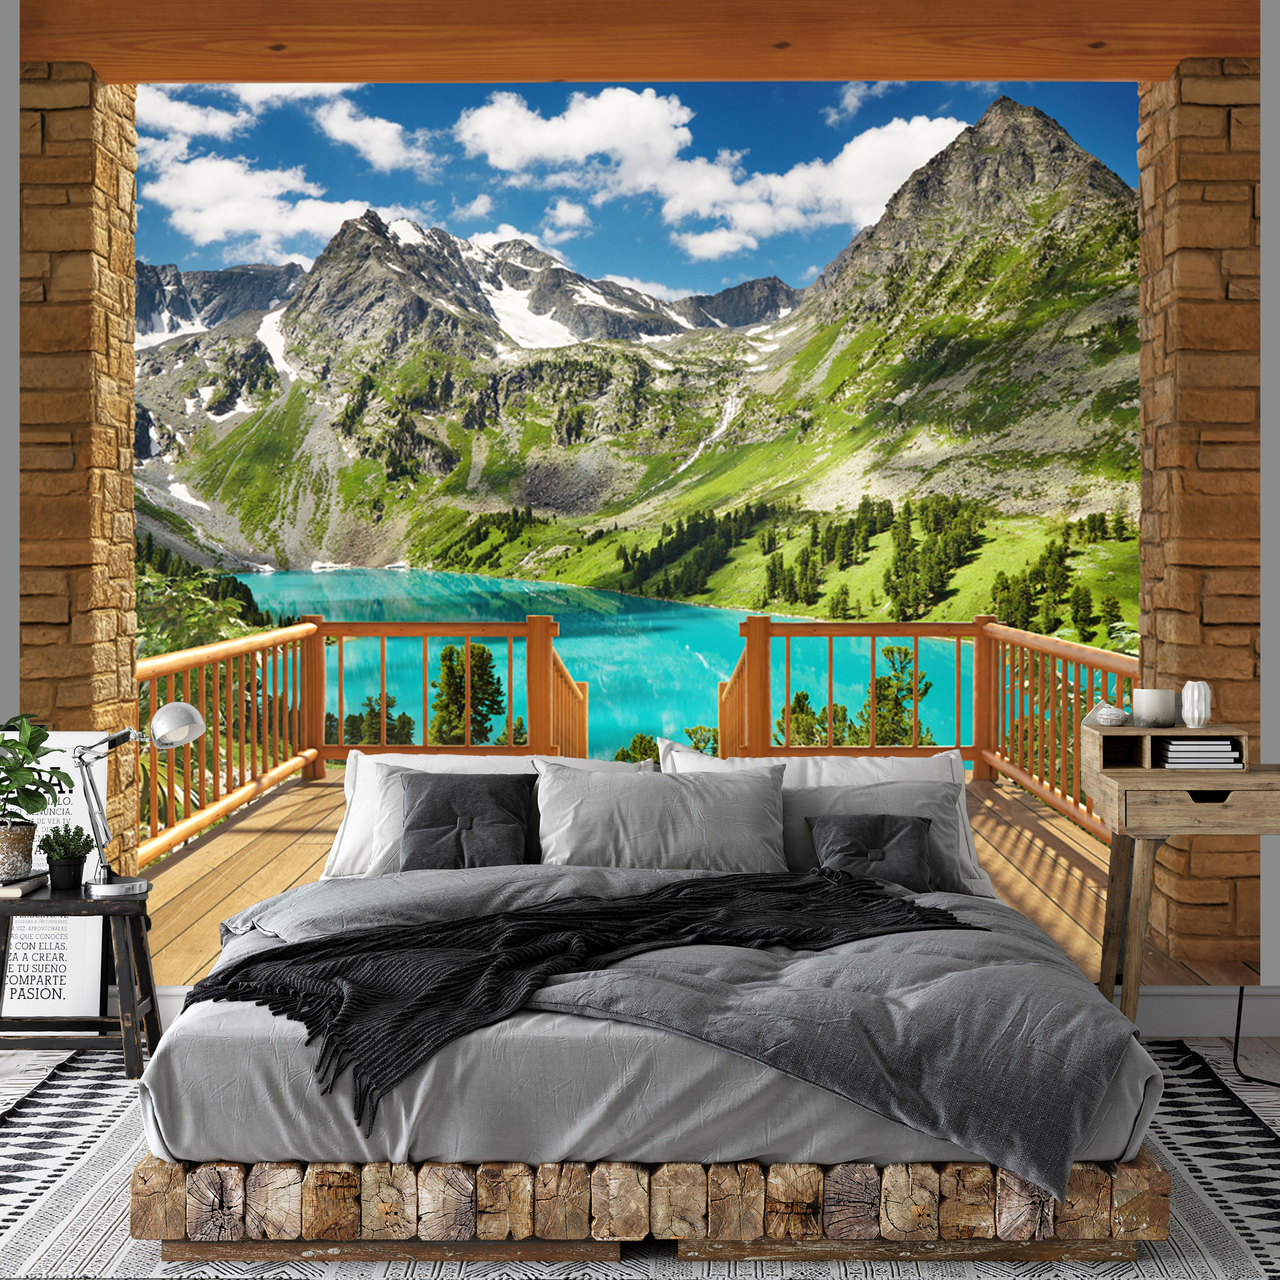 8k Wallpaper Desktop ~ Sdeerwallpaper  Berglandschap, Behang ideeën,  Digitaal behang